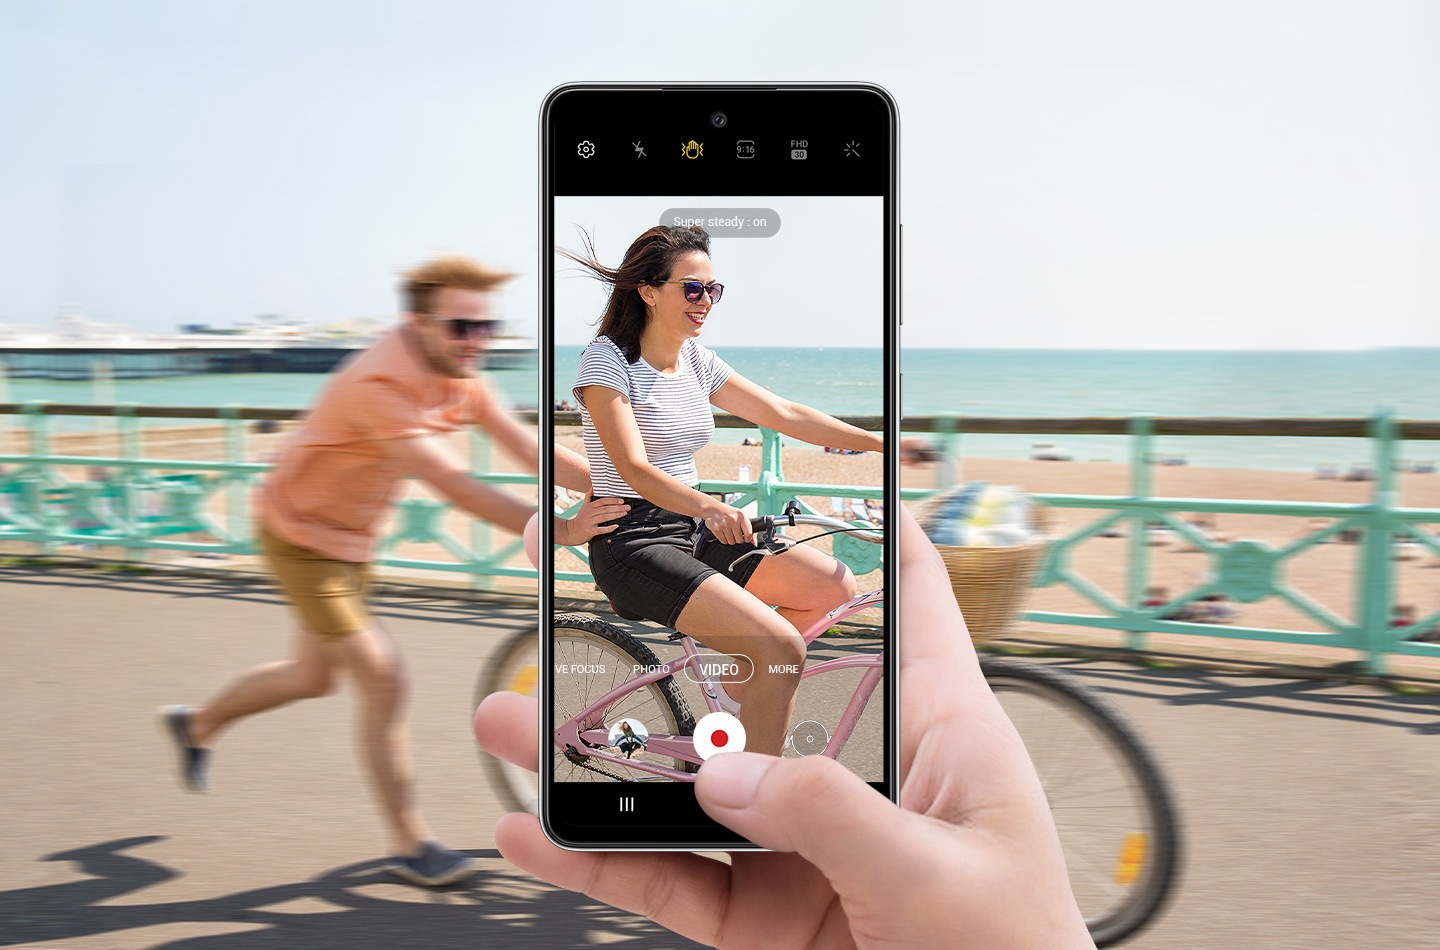 Une personne sur un vélo avec une autre personne courant derrière elle. Devant, une main tenant le Galaxy A52 avec l’interface de l’appareil photo à l’écran. La scène à l’intérieur de l’écran est plus claire que la scène hors de l’écran, ce qui illustre comment le mode ultra stable permet de filmer de manière fluide, même si le sujet est en mouvement.